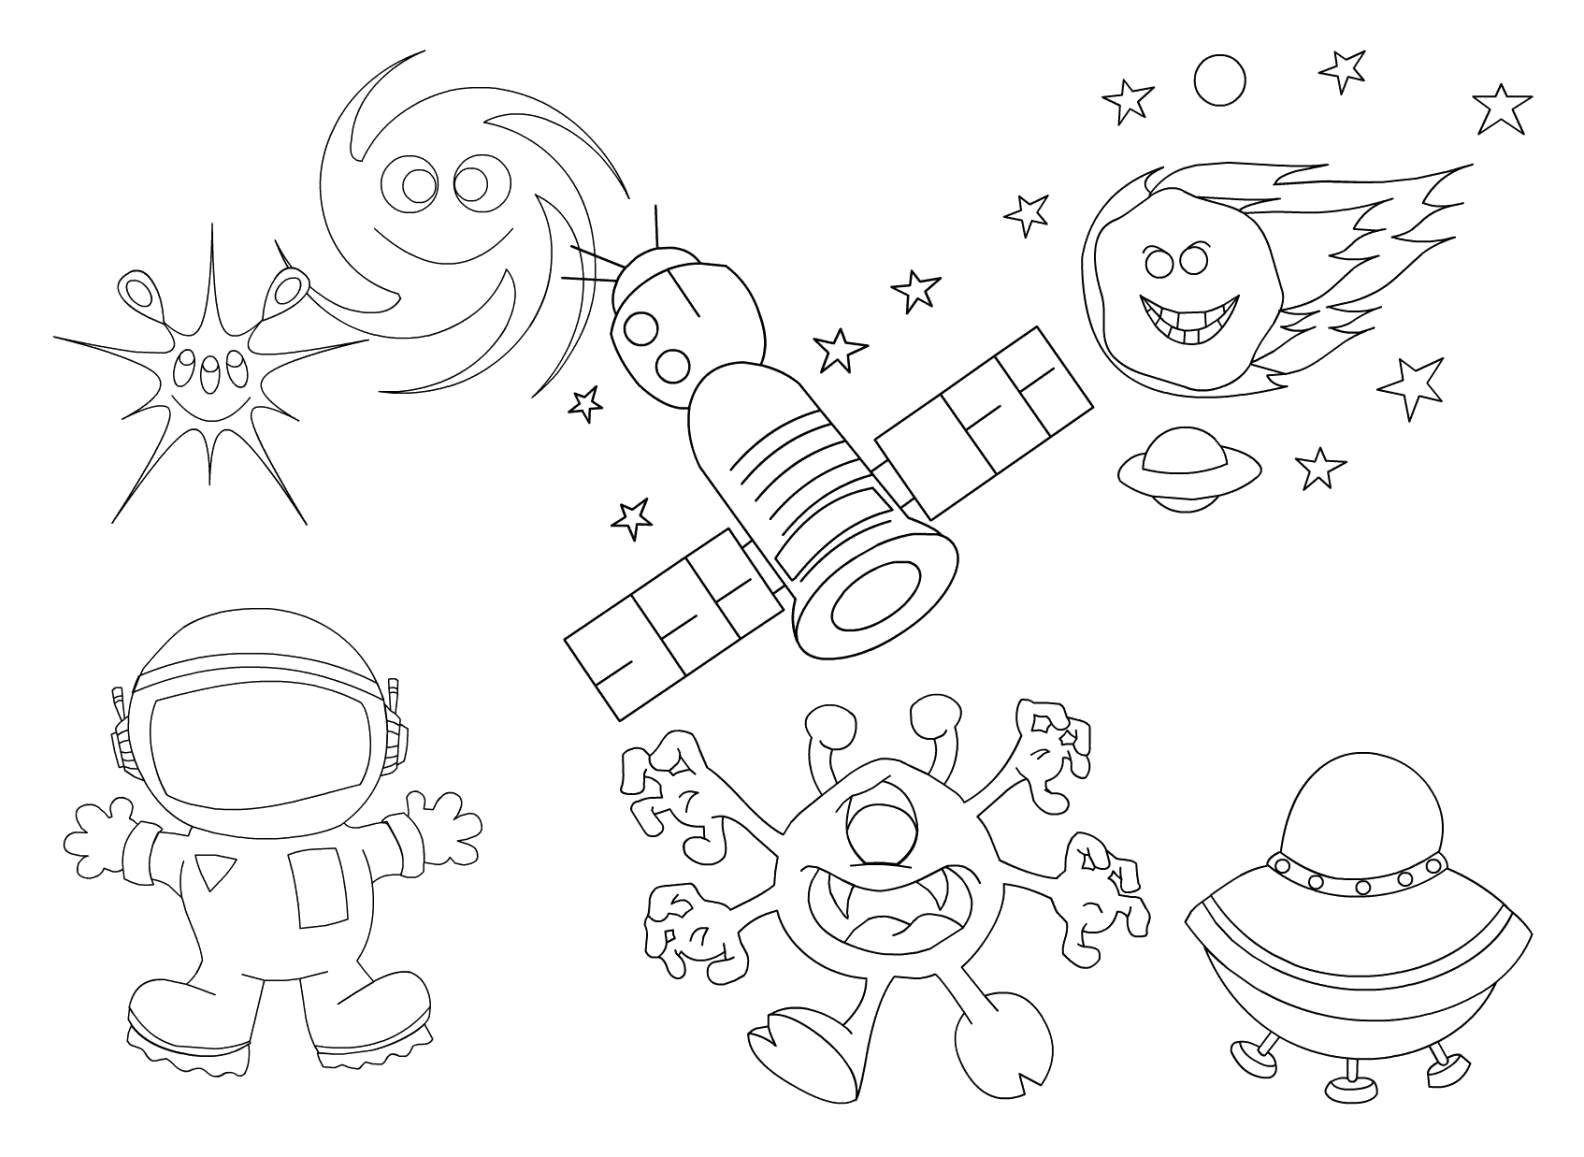 Розмальовки  Космонавт, зірки, супутник, інопланетянин, космічний корабель, комети в космосі. Завантажити розмальовку - Космос, планета, Всесвіт, Галактика, космонавт, інопланетянин, зірки.  Роздрукувати ,космос,